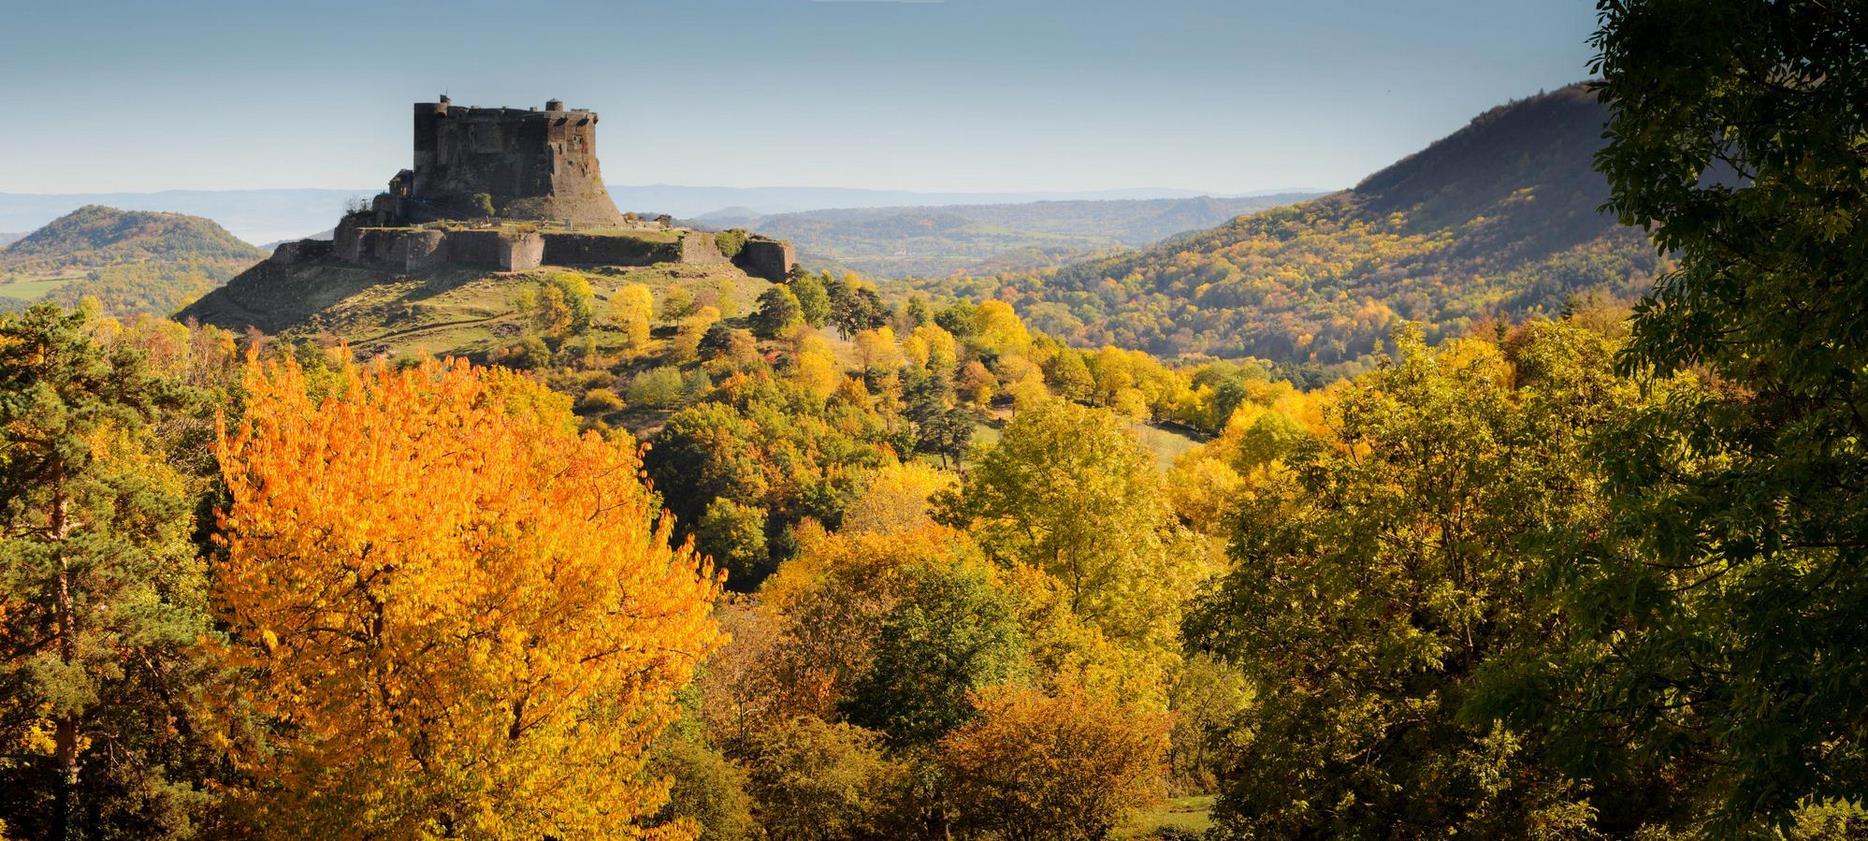 Super Besse - Chateau de Murol, chateau fort et les volcans d'Auvergne